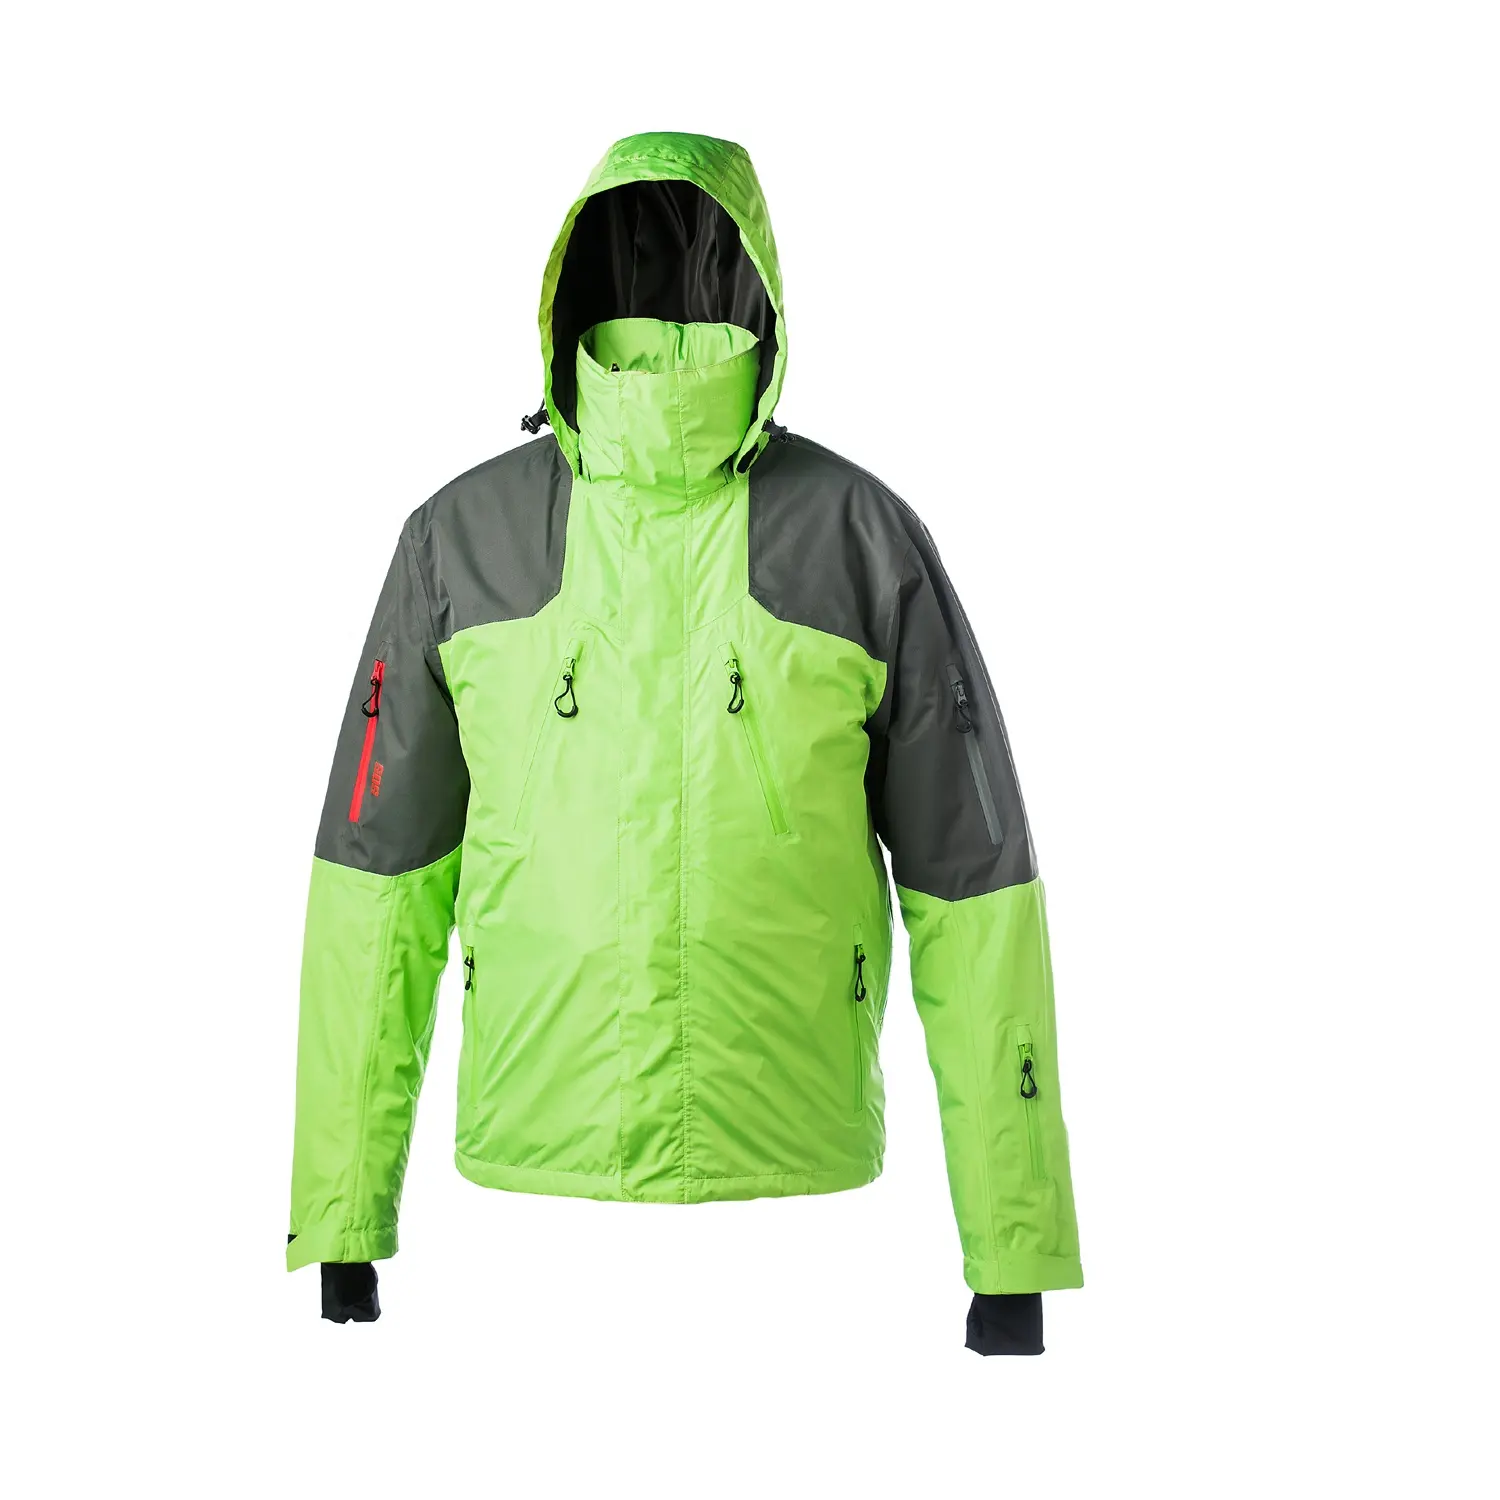 Erkekler için 3 in 1 paraşüt ceket Pongee Rip Stop rüzgar geçirmez yalıtımlı açık spor ceket su geçirmez kayak ceket